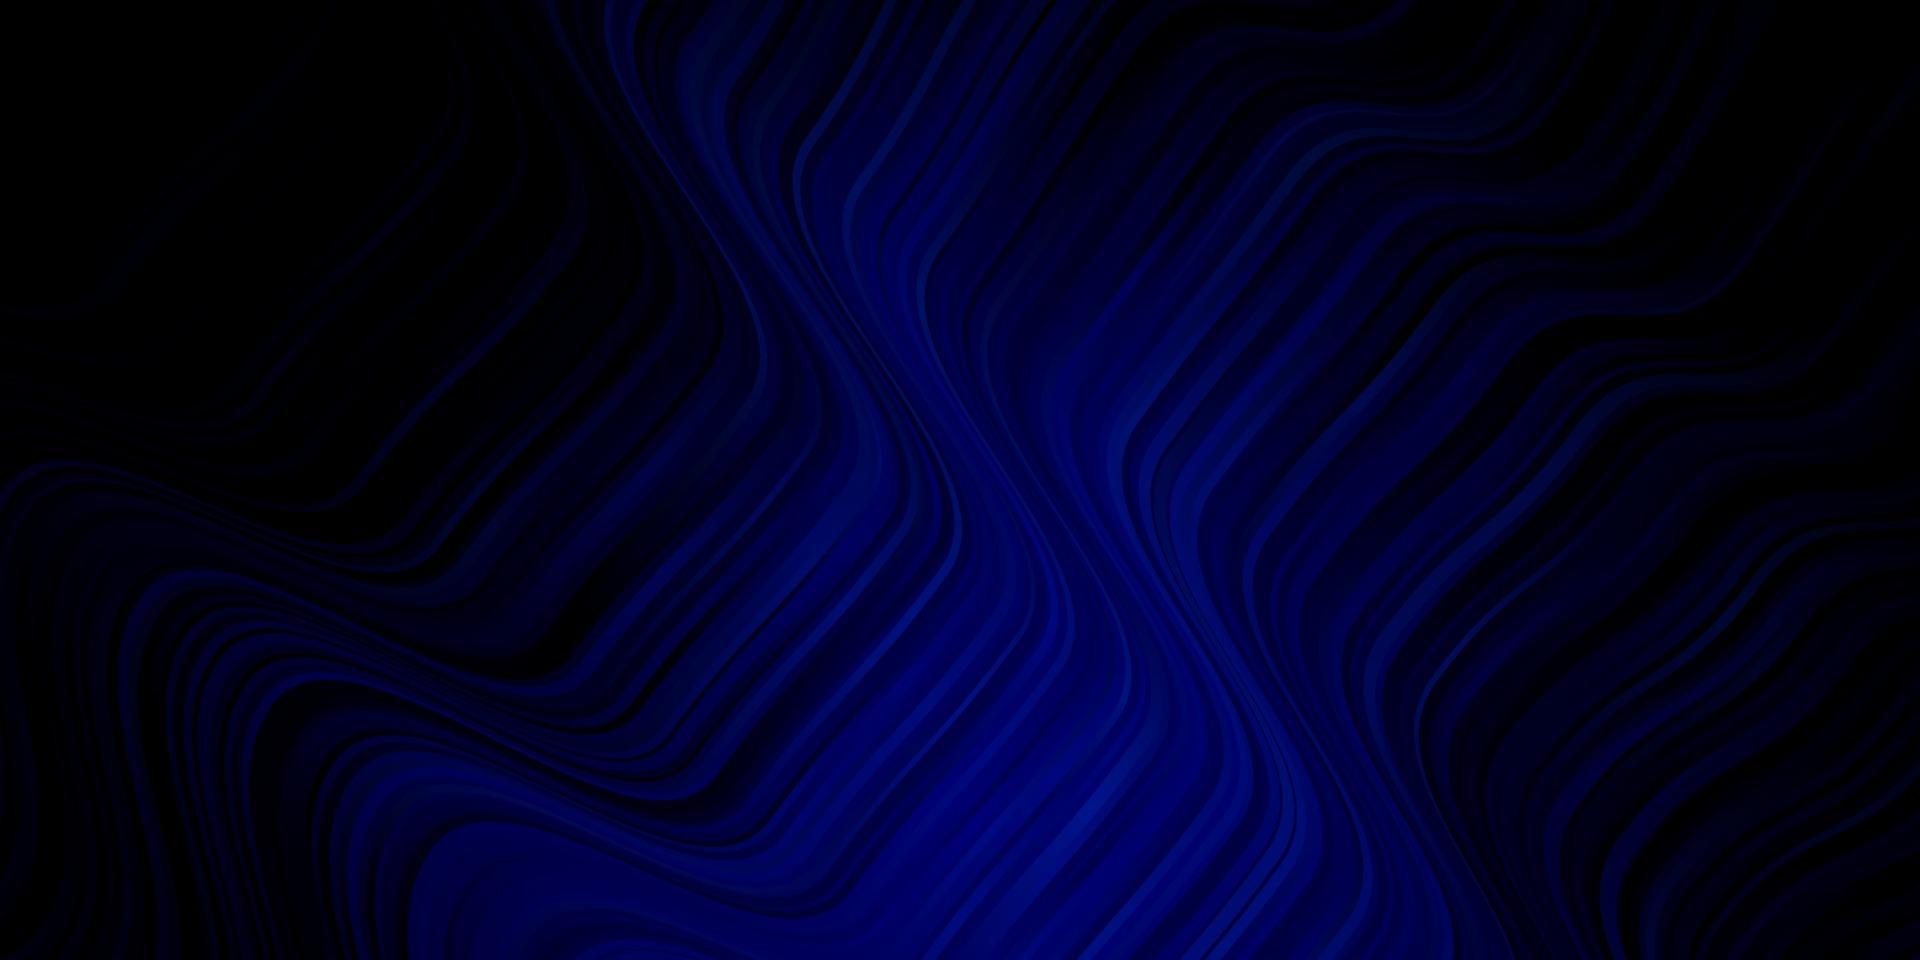 sfondo vettoriale blu scuro con arco circolare.